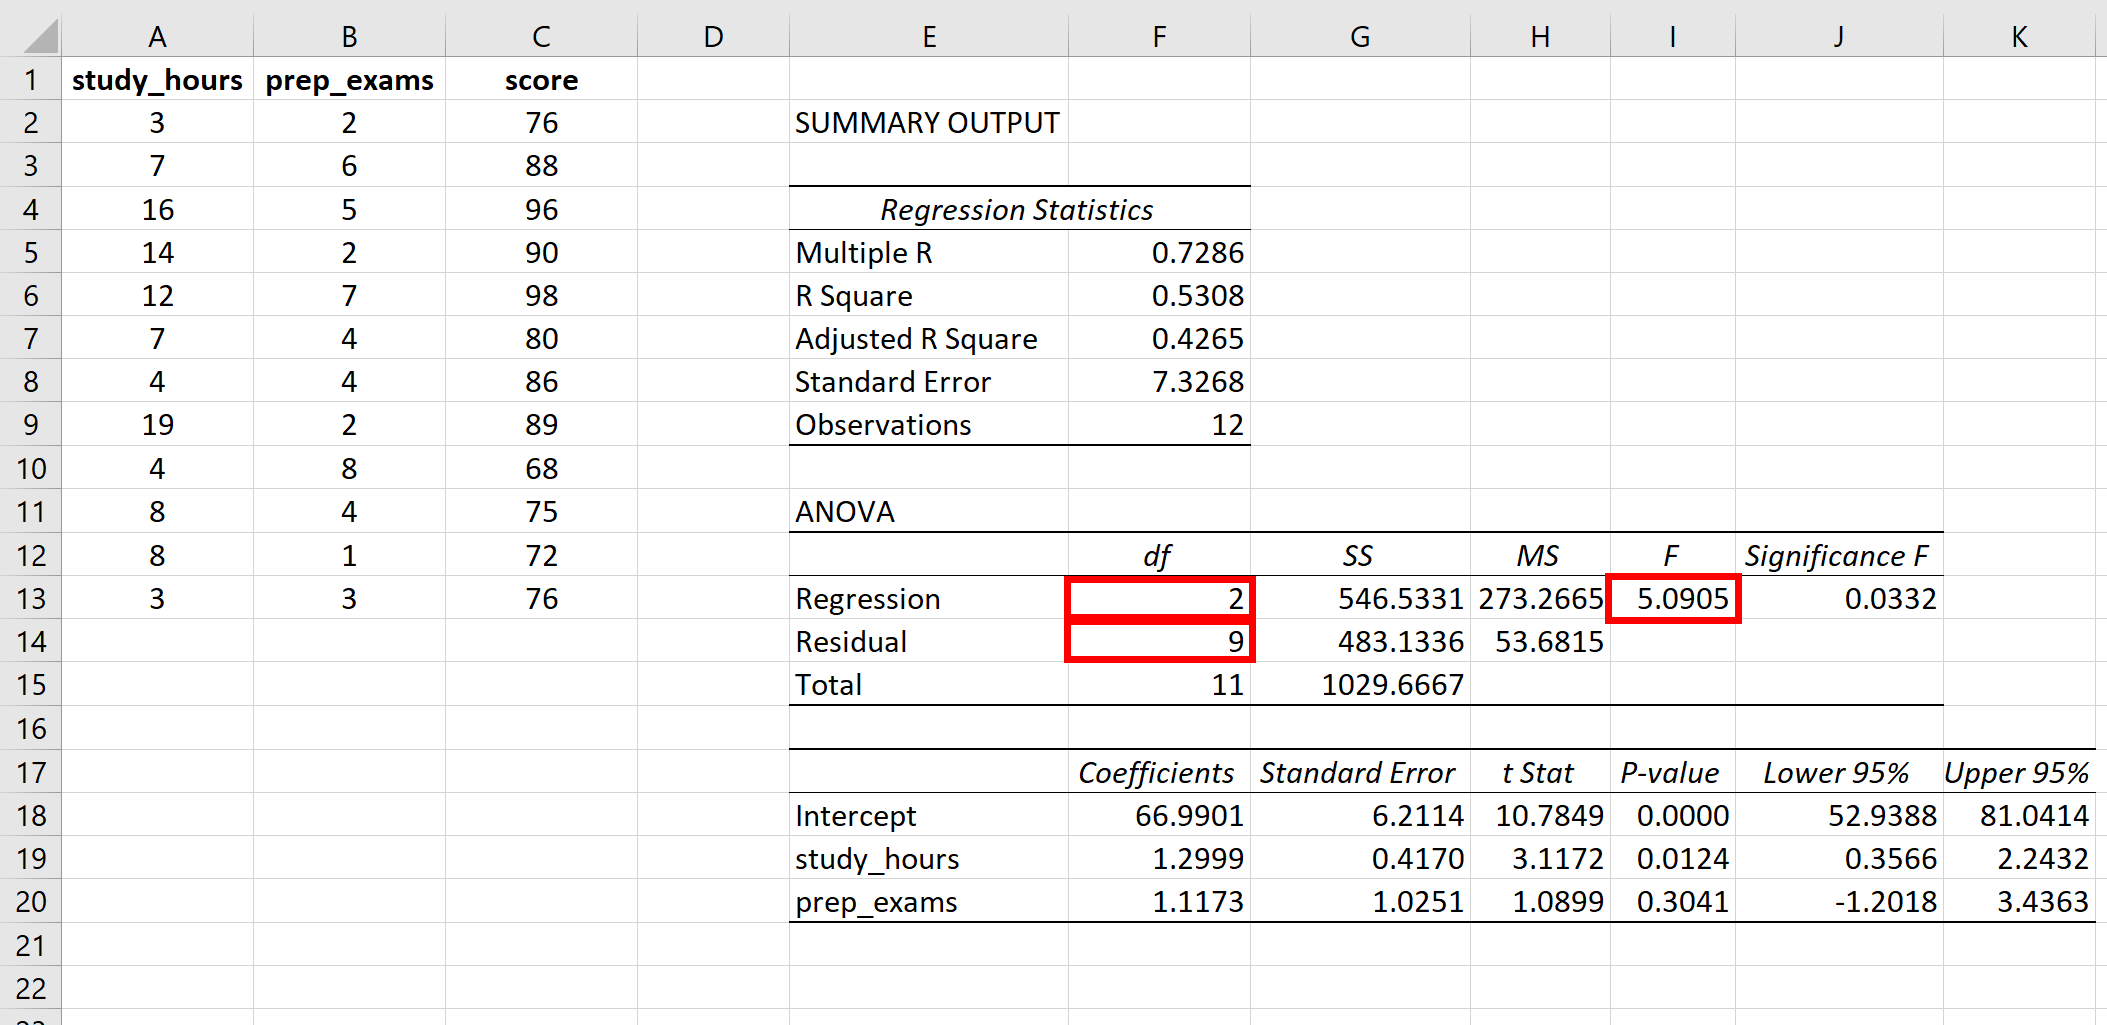 Statistique F pour la régression globale dans Excel